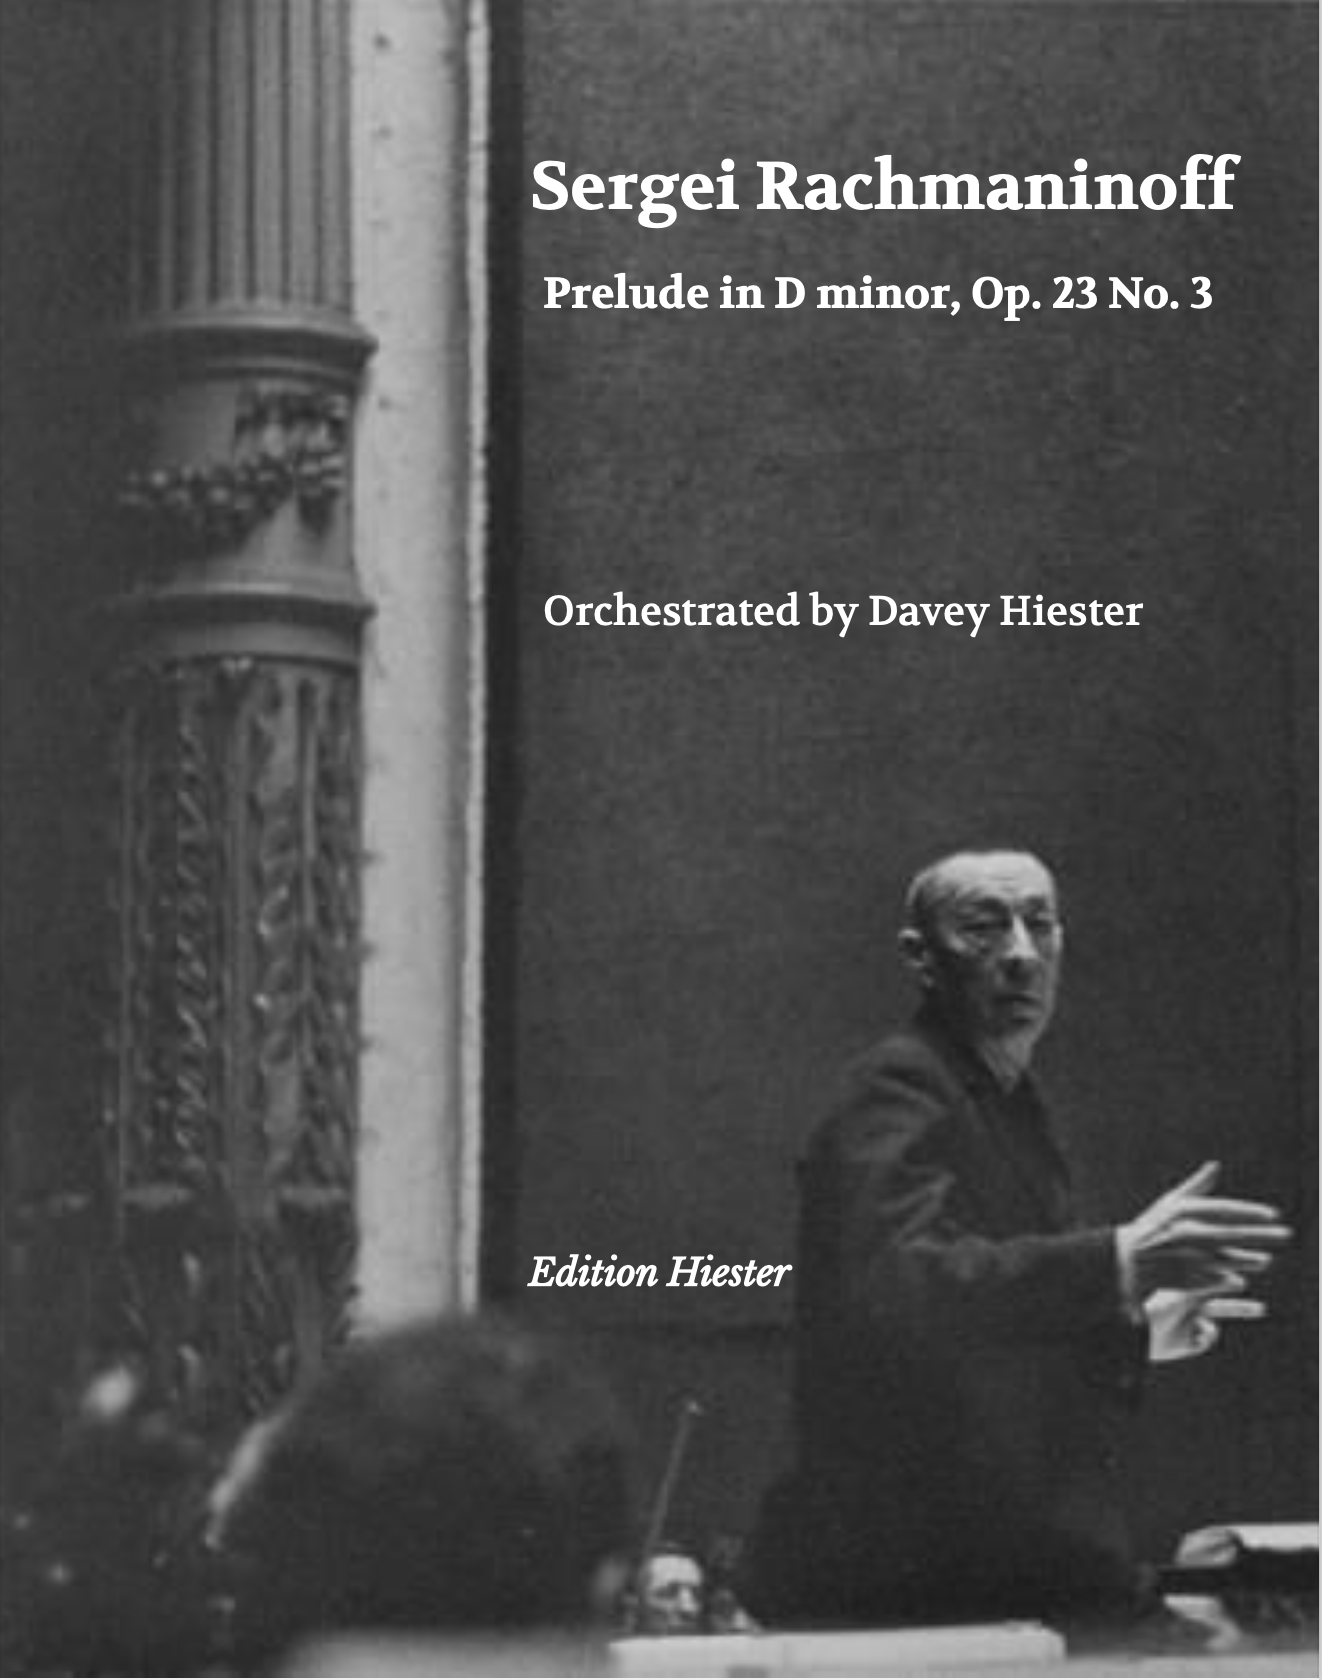 Sergei Rachmaninoff; originally for Piano